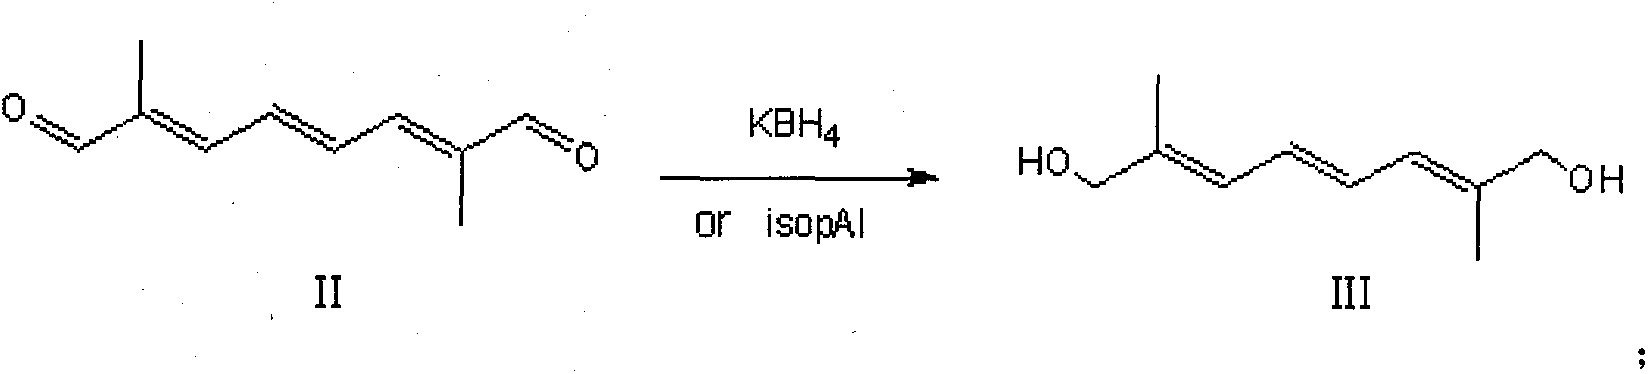 Preparation method of 2,7-dimethyl-2,4,6-octa-triene-1,8-diethylester biphosphonate